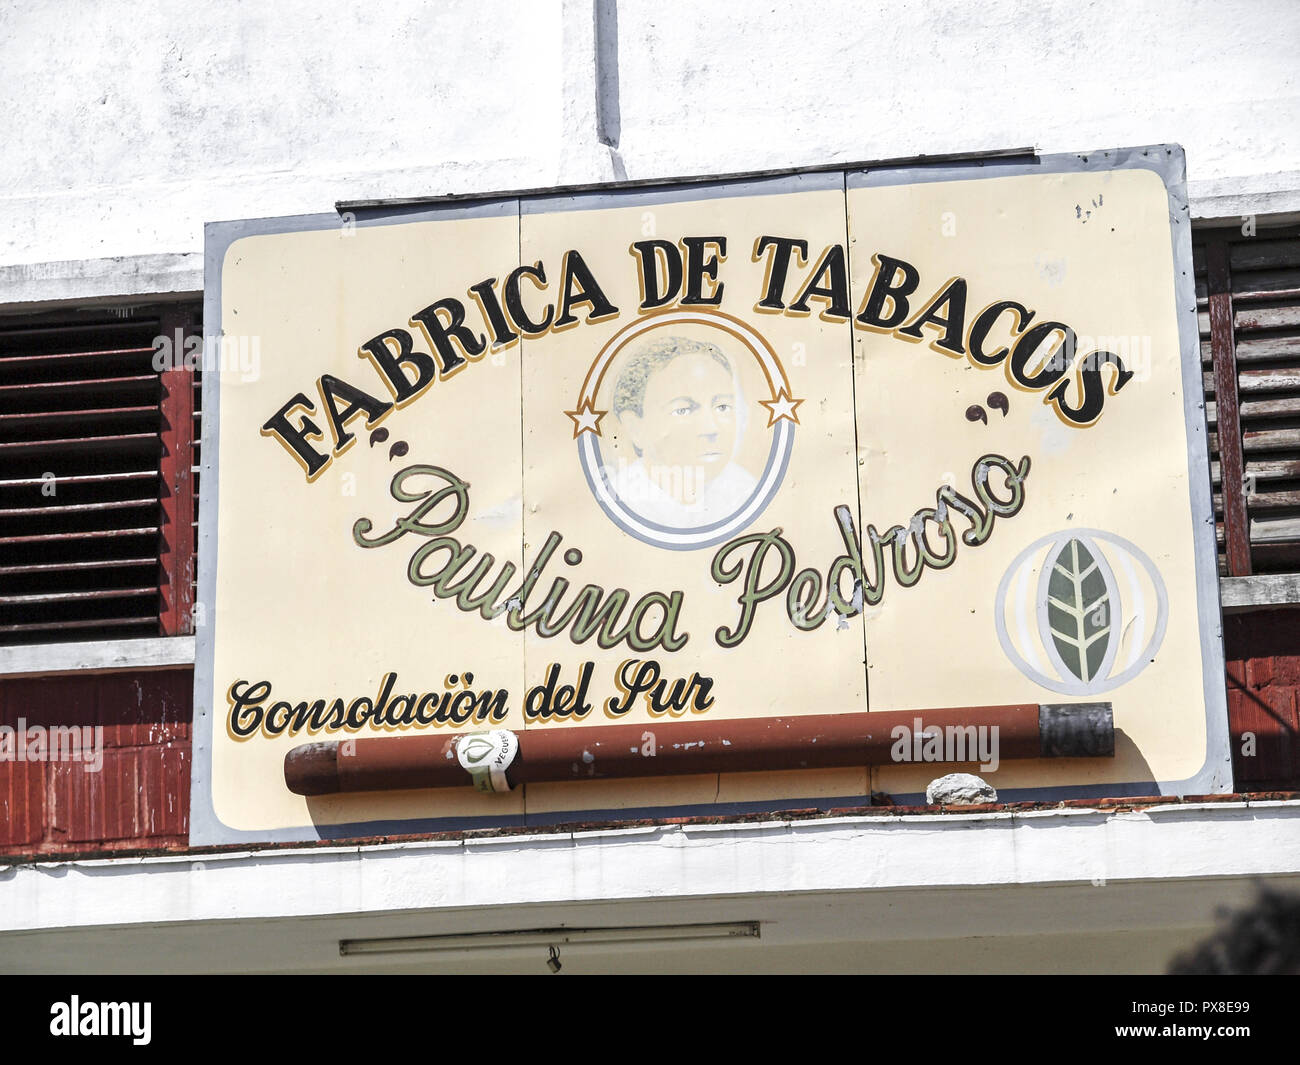 Tobacco plant, Cuba Stock Photo